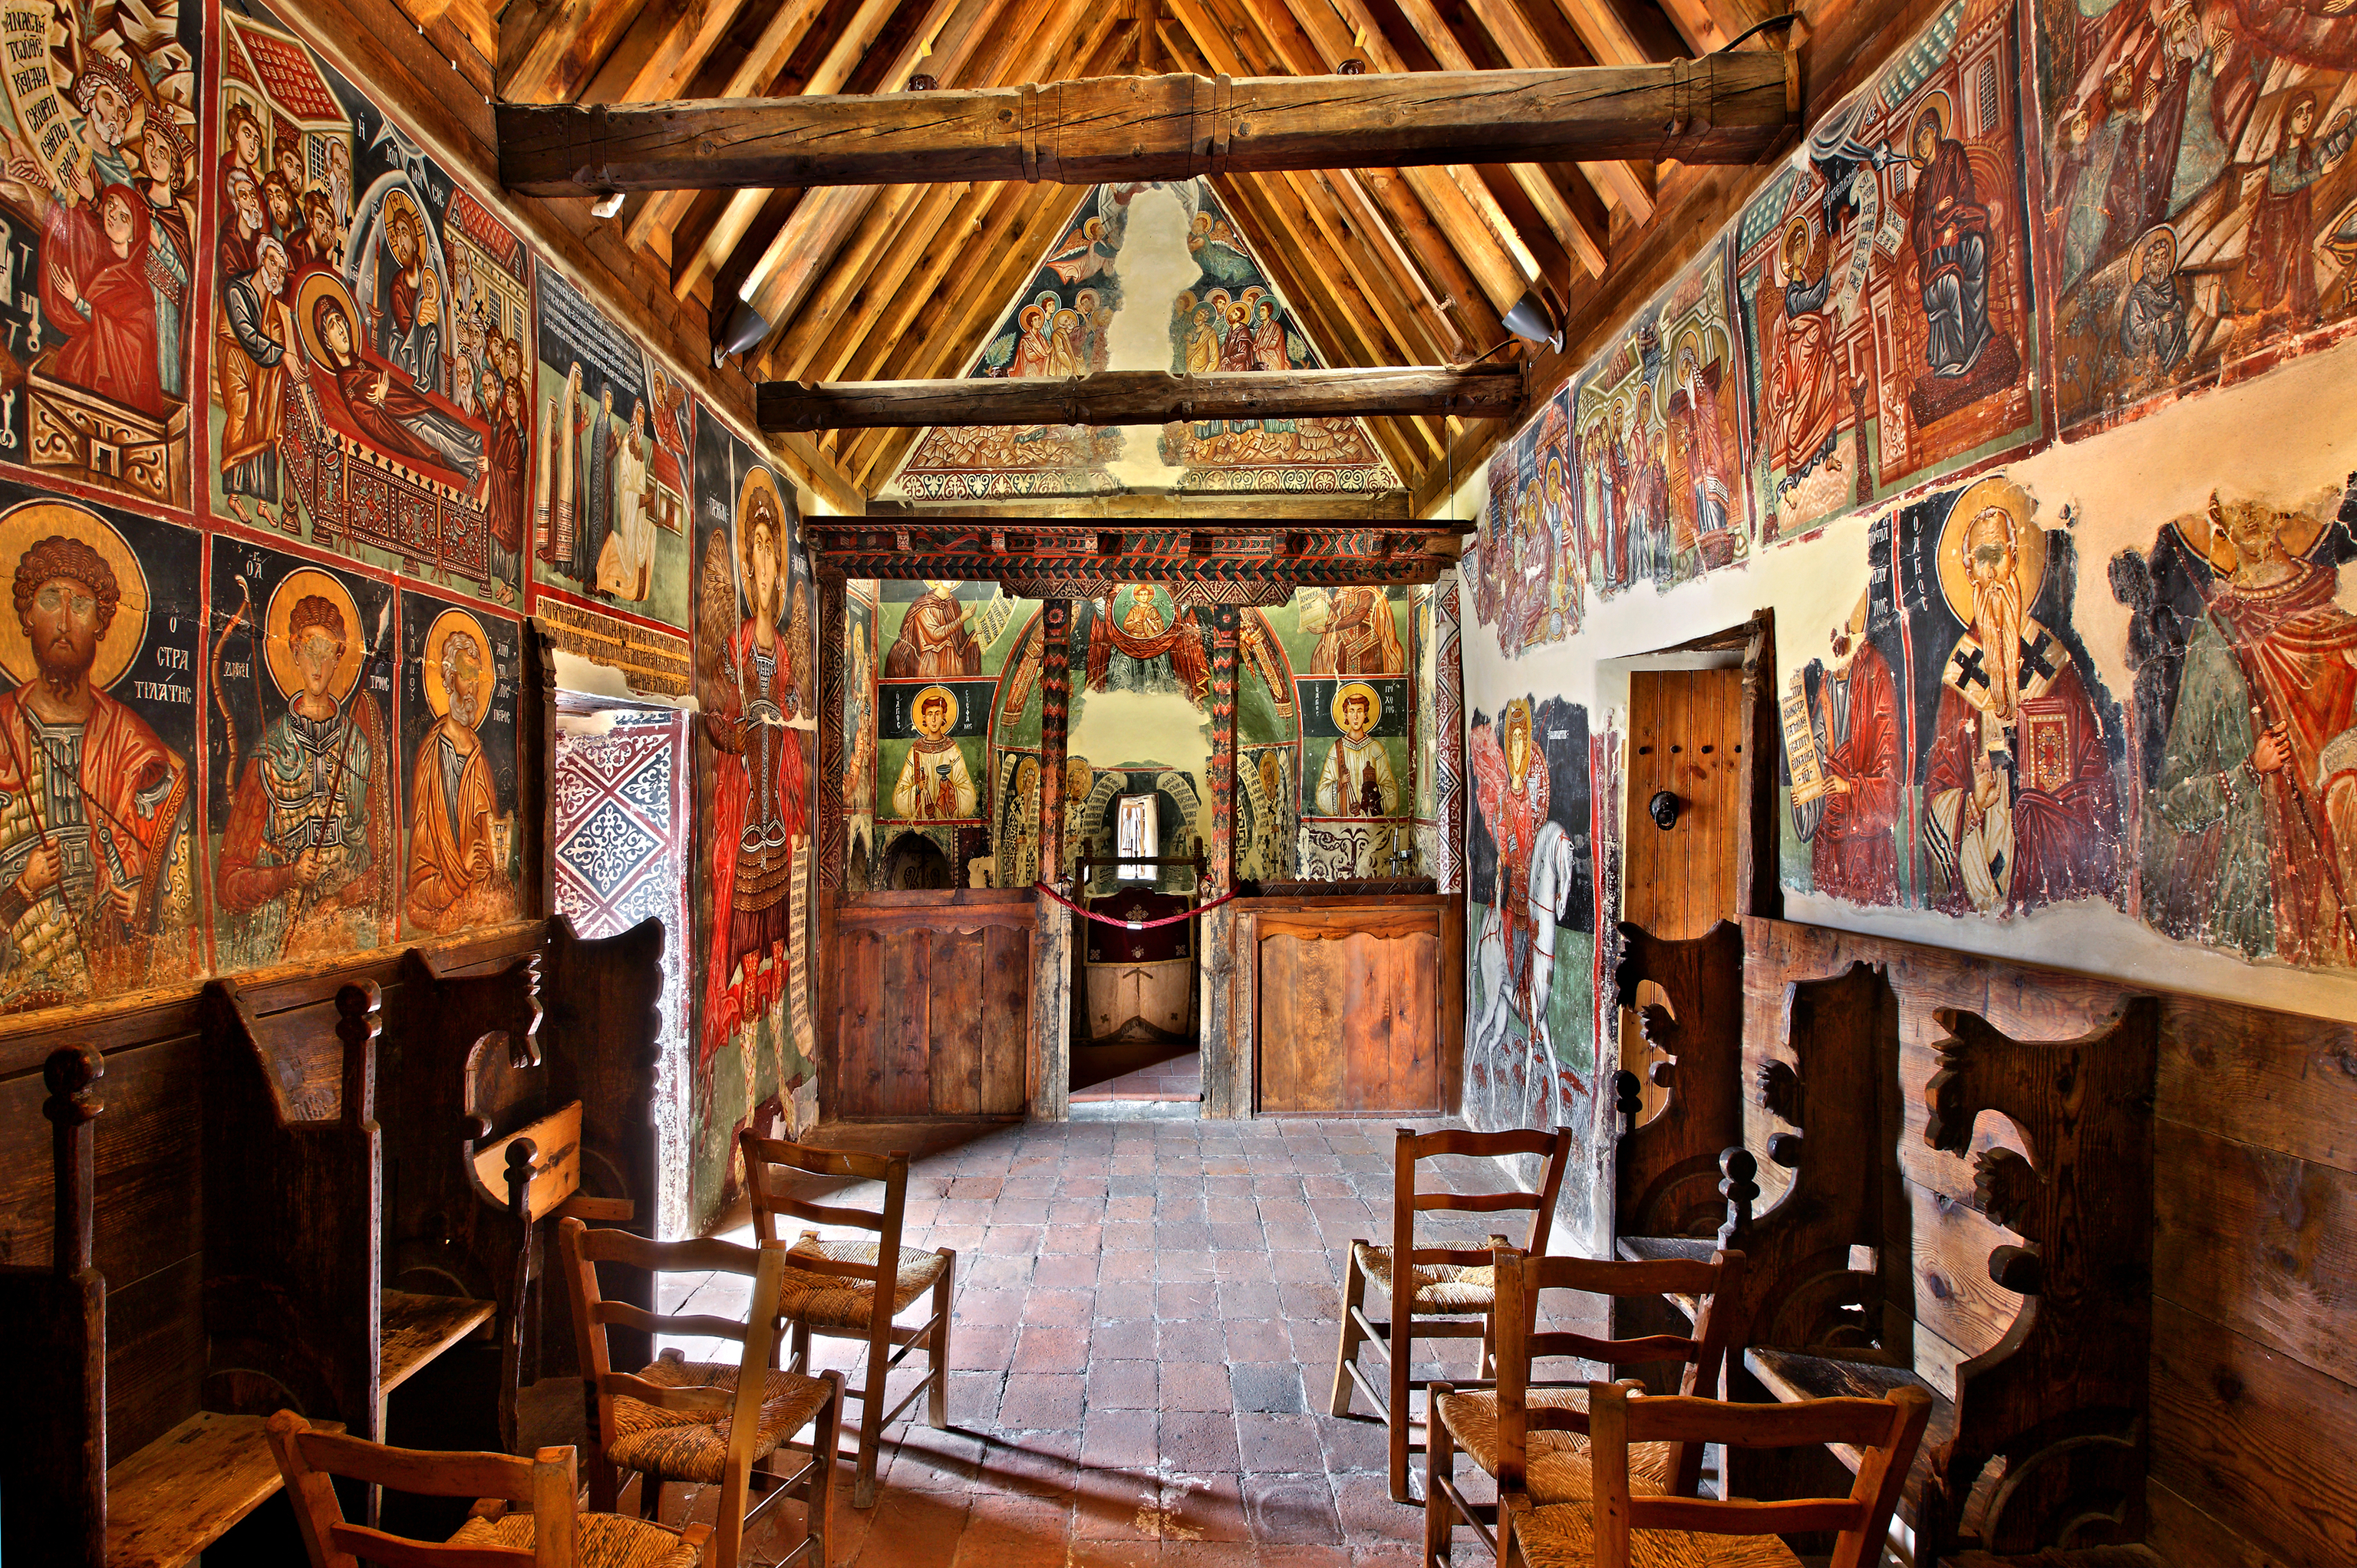 Las diez iglesias pintadas de Troodos son una visita sorprendente.